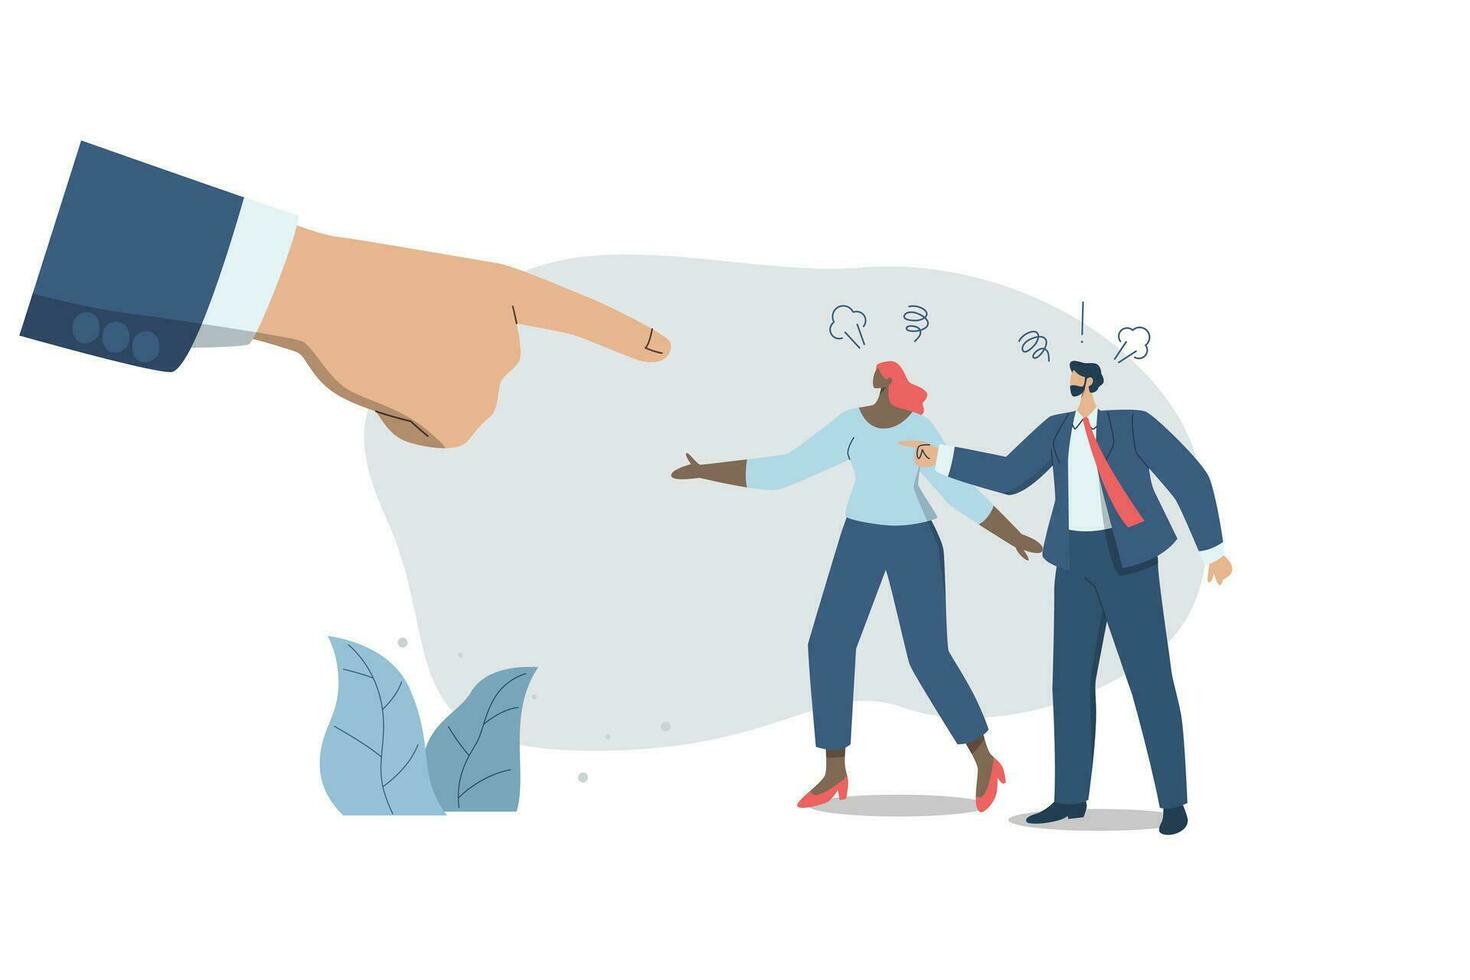 spänd argument av arg anställda. annorlunda trodde, oenighet eller motsatt sätt, konflikt mellan kollegor och stor hand, vektor design illustration.